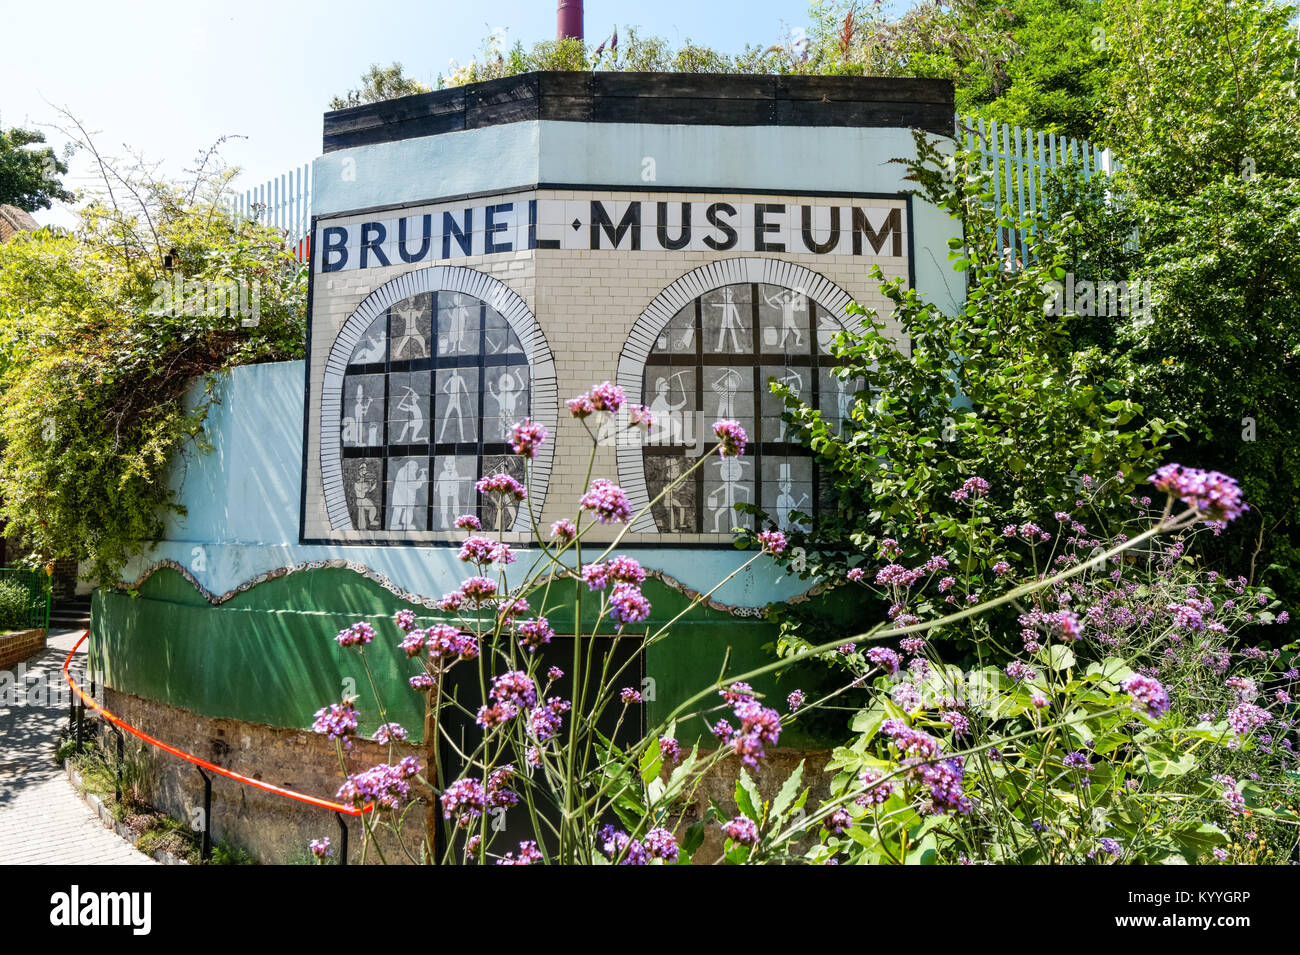 The Brunel Museum, Rotherhithe, London, England, United Kingdom, UK Stock Photo